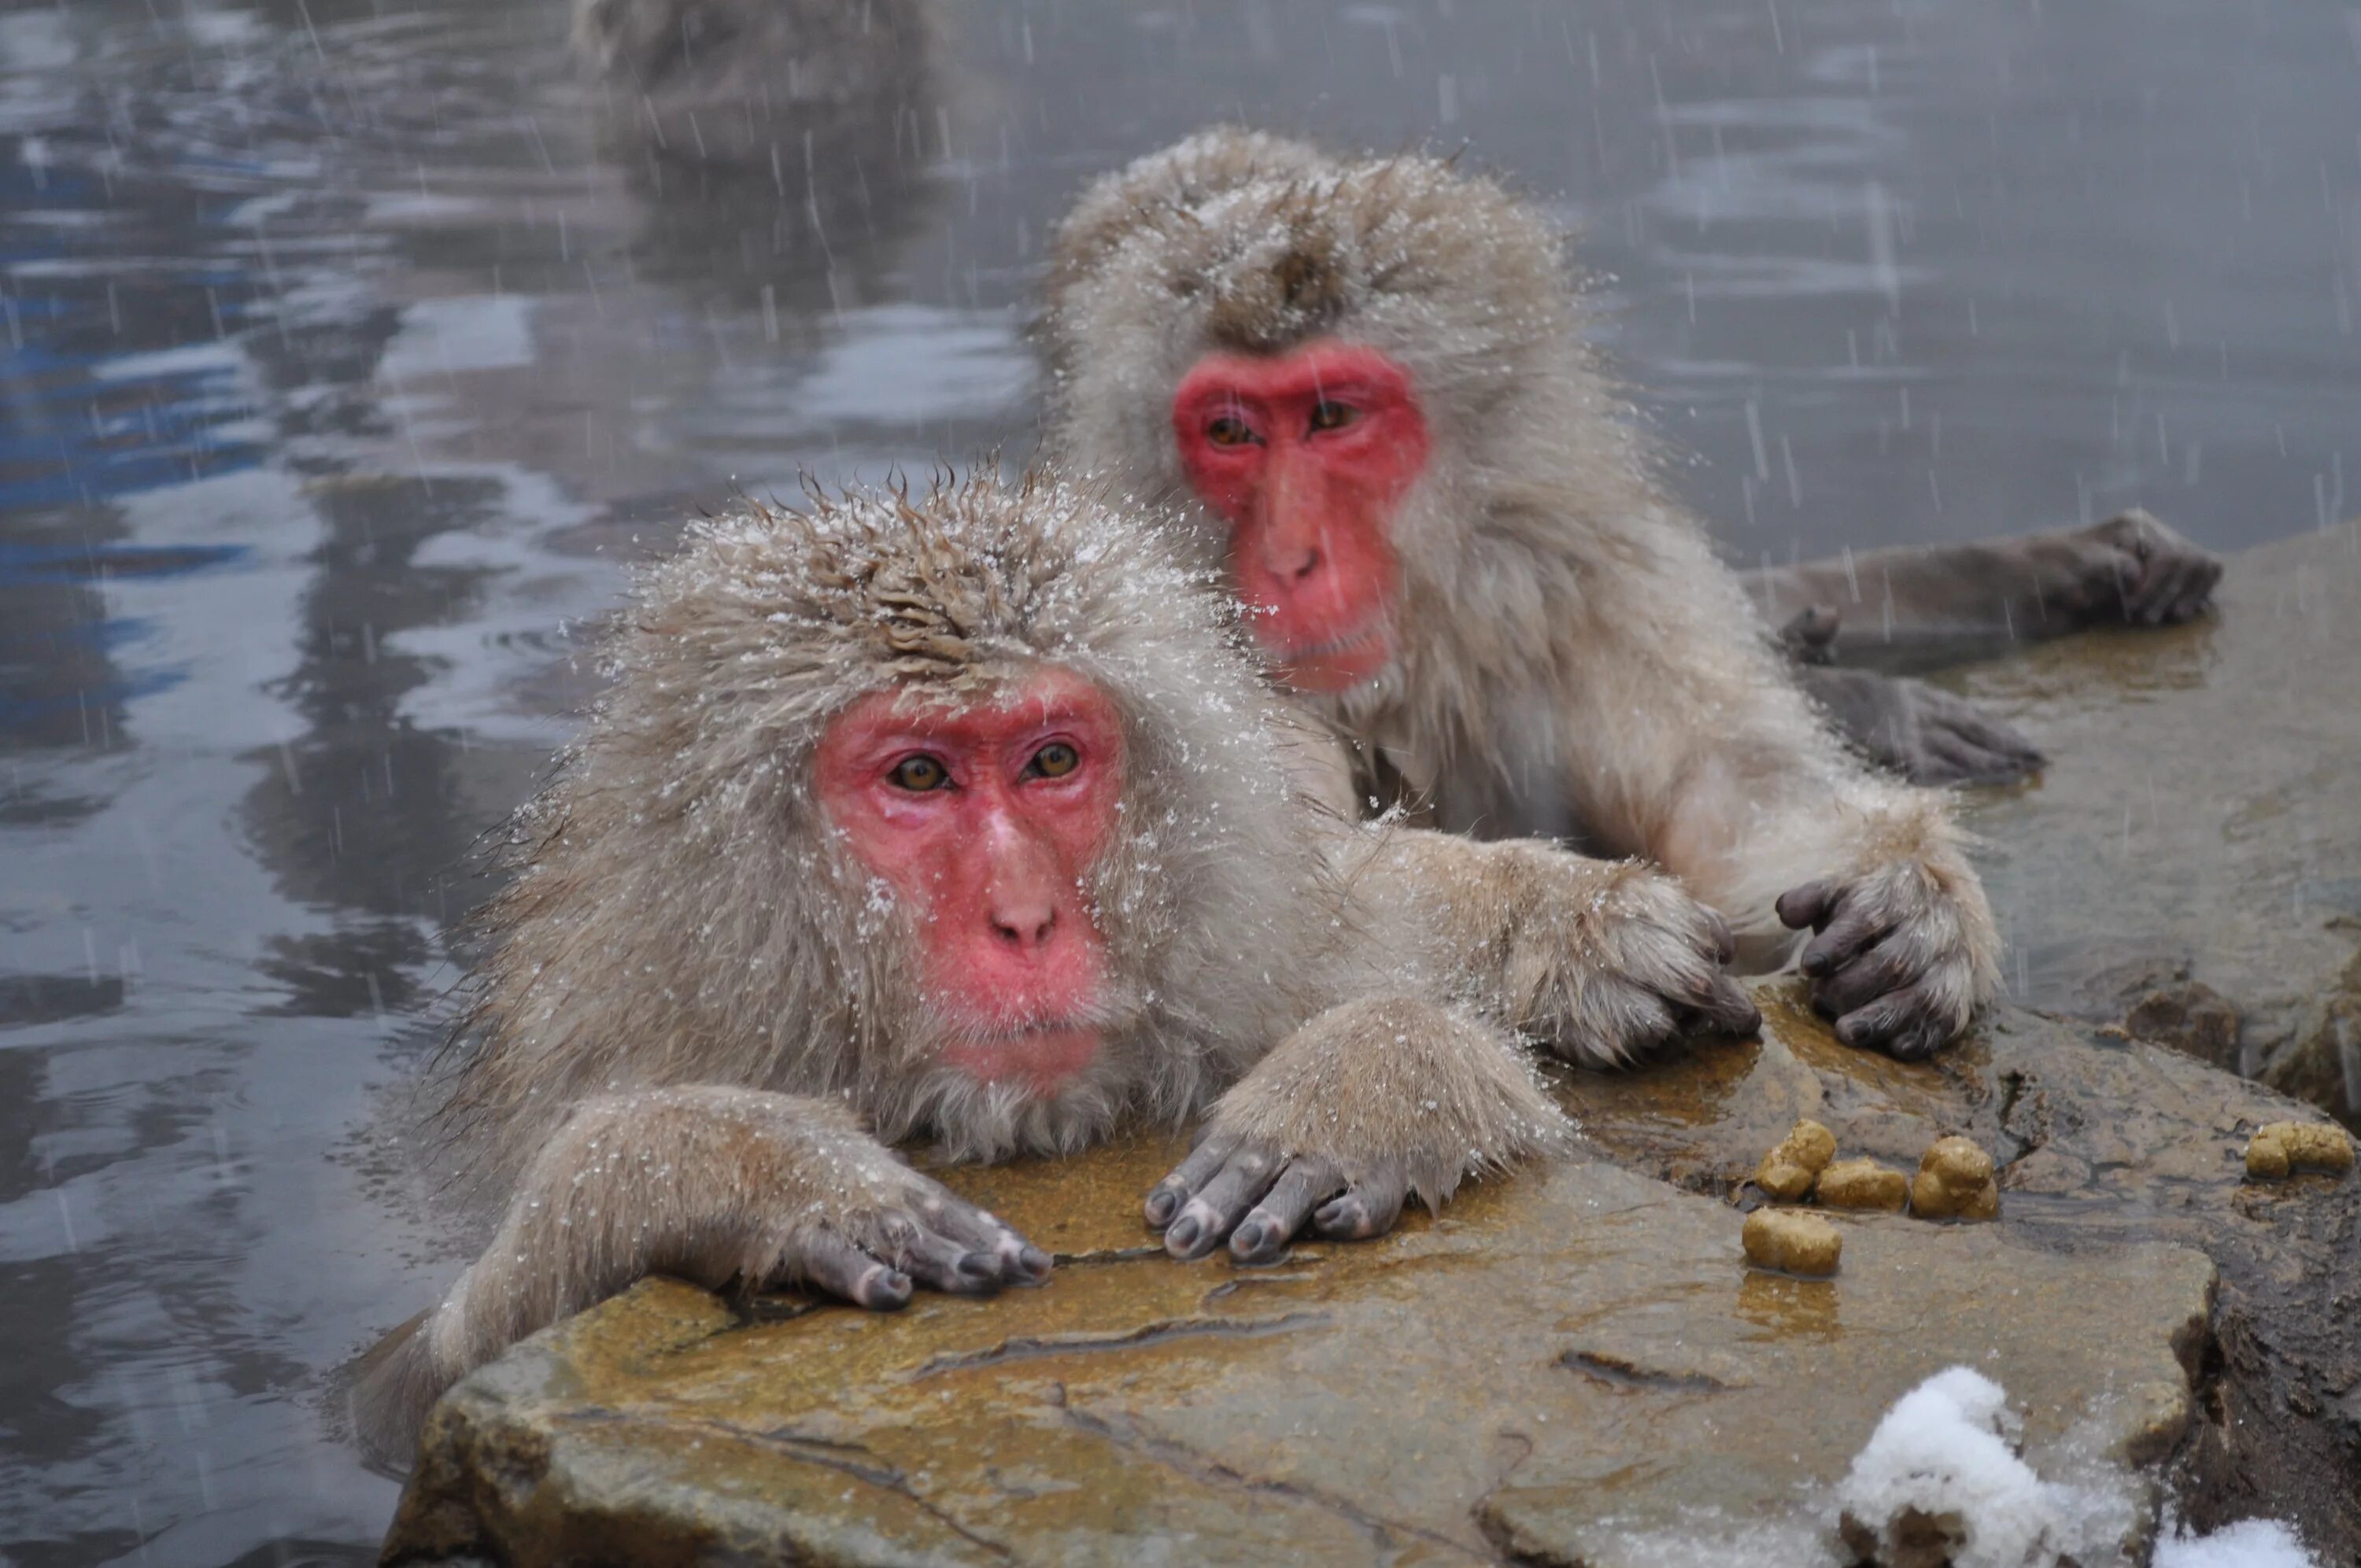 Обезьяны в Японии в горячих источниках. Парк обезьян Дзигокудани. Японские макаки в горячих источниках зимой. Снежные обезьяны в горячих источниках Нагано. Купание обезьяны в теплой все песни